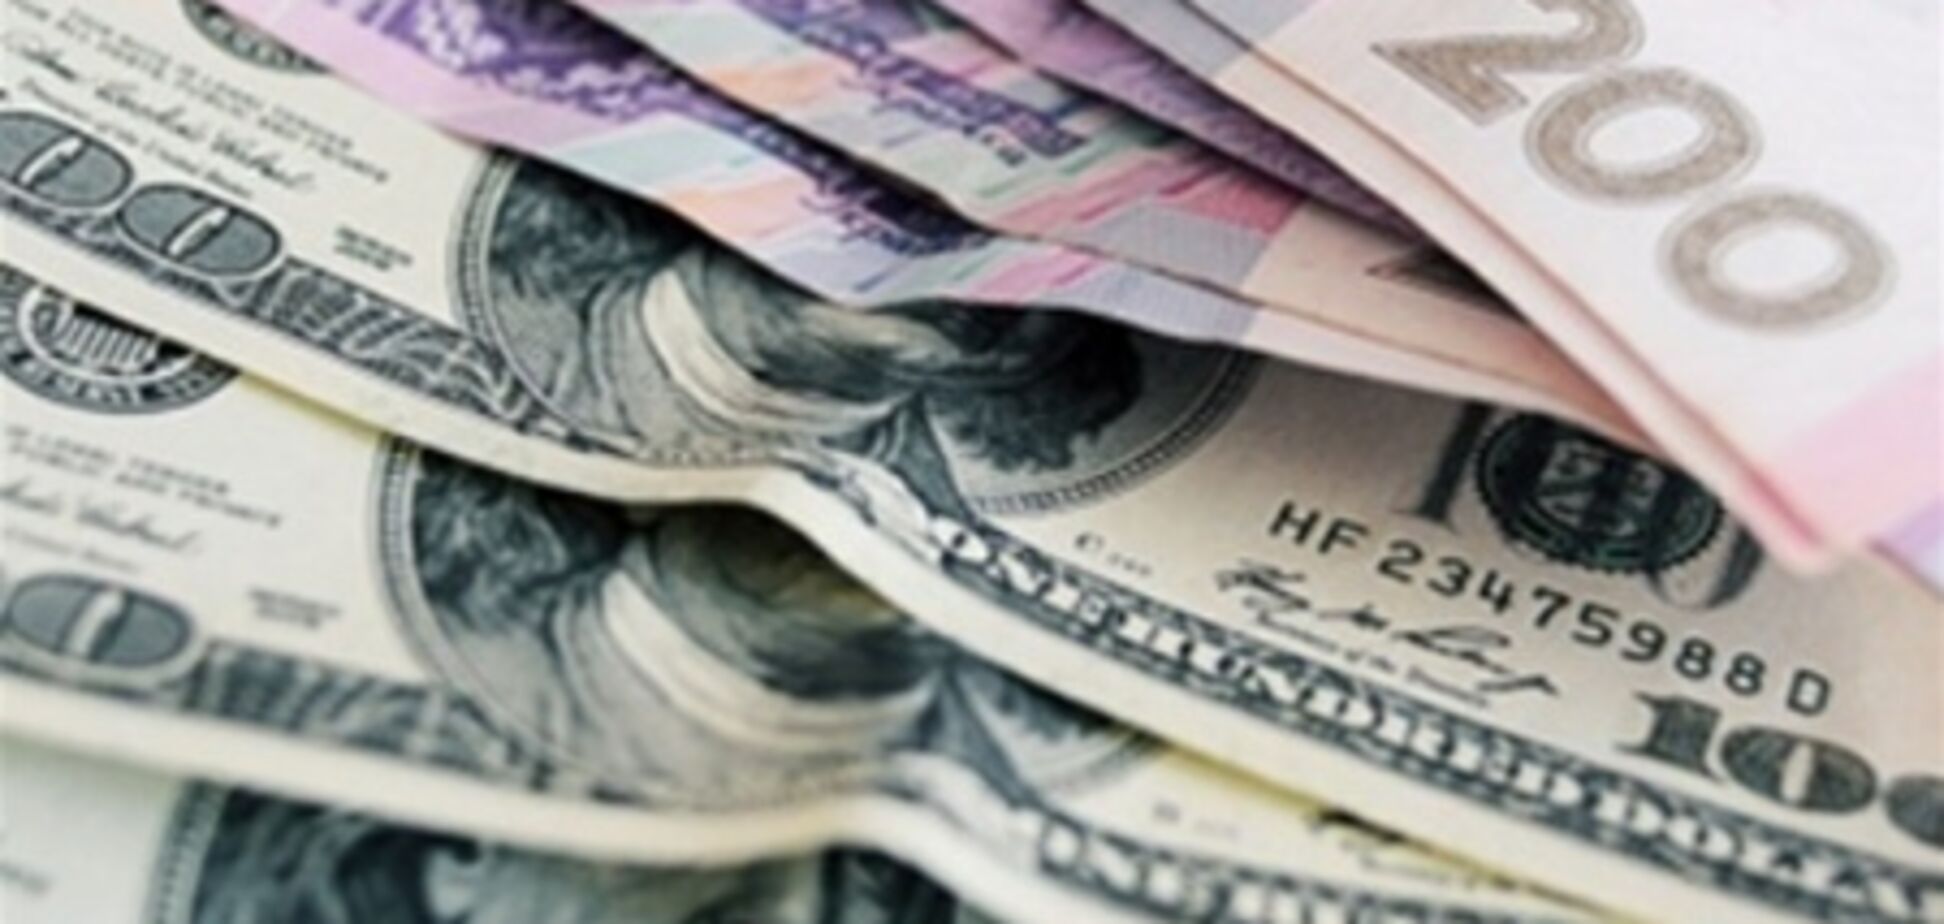 Обмен валюты на гривну может вызвать рост цен – эксперт